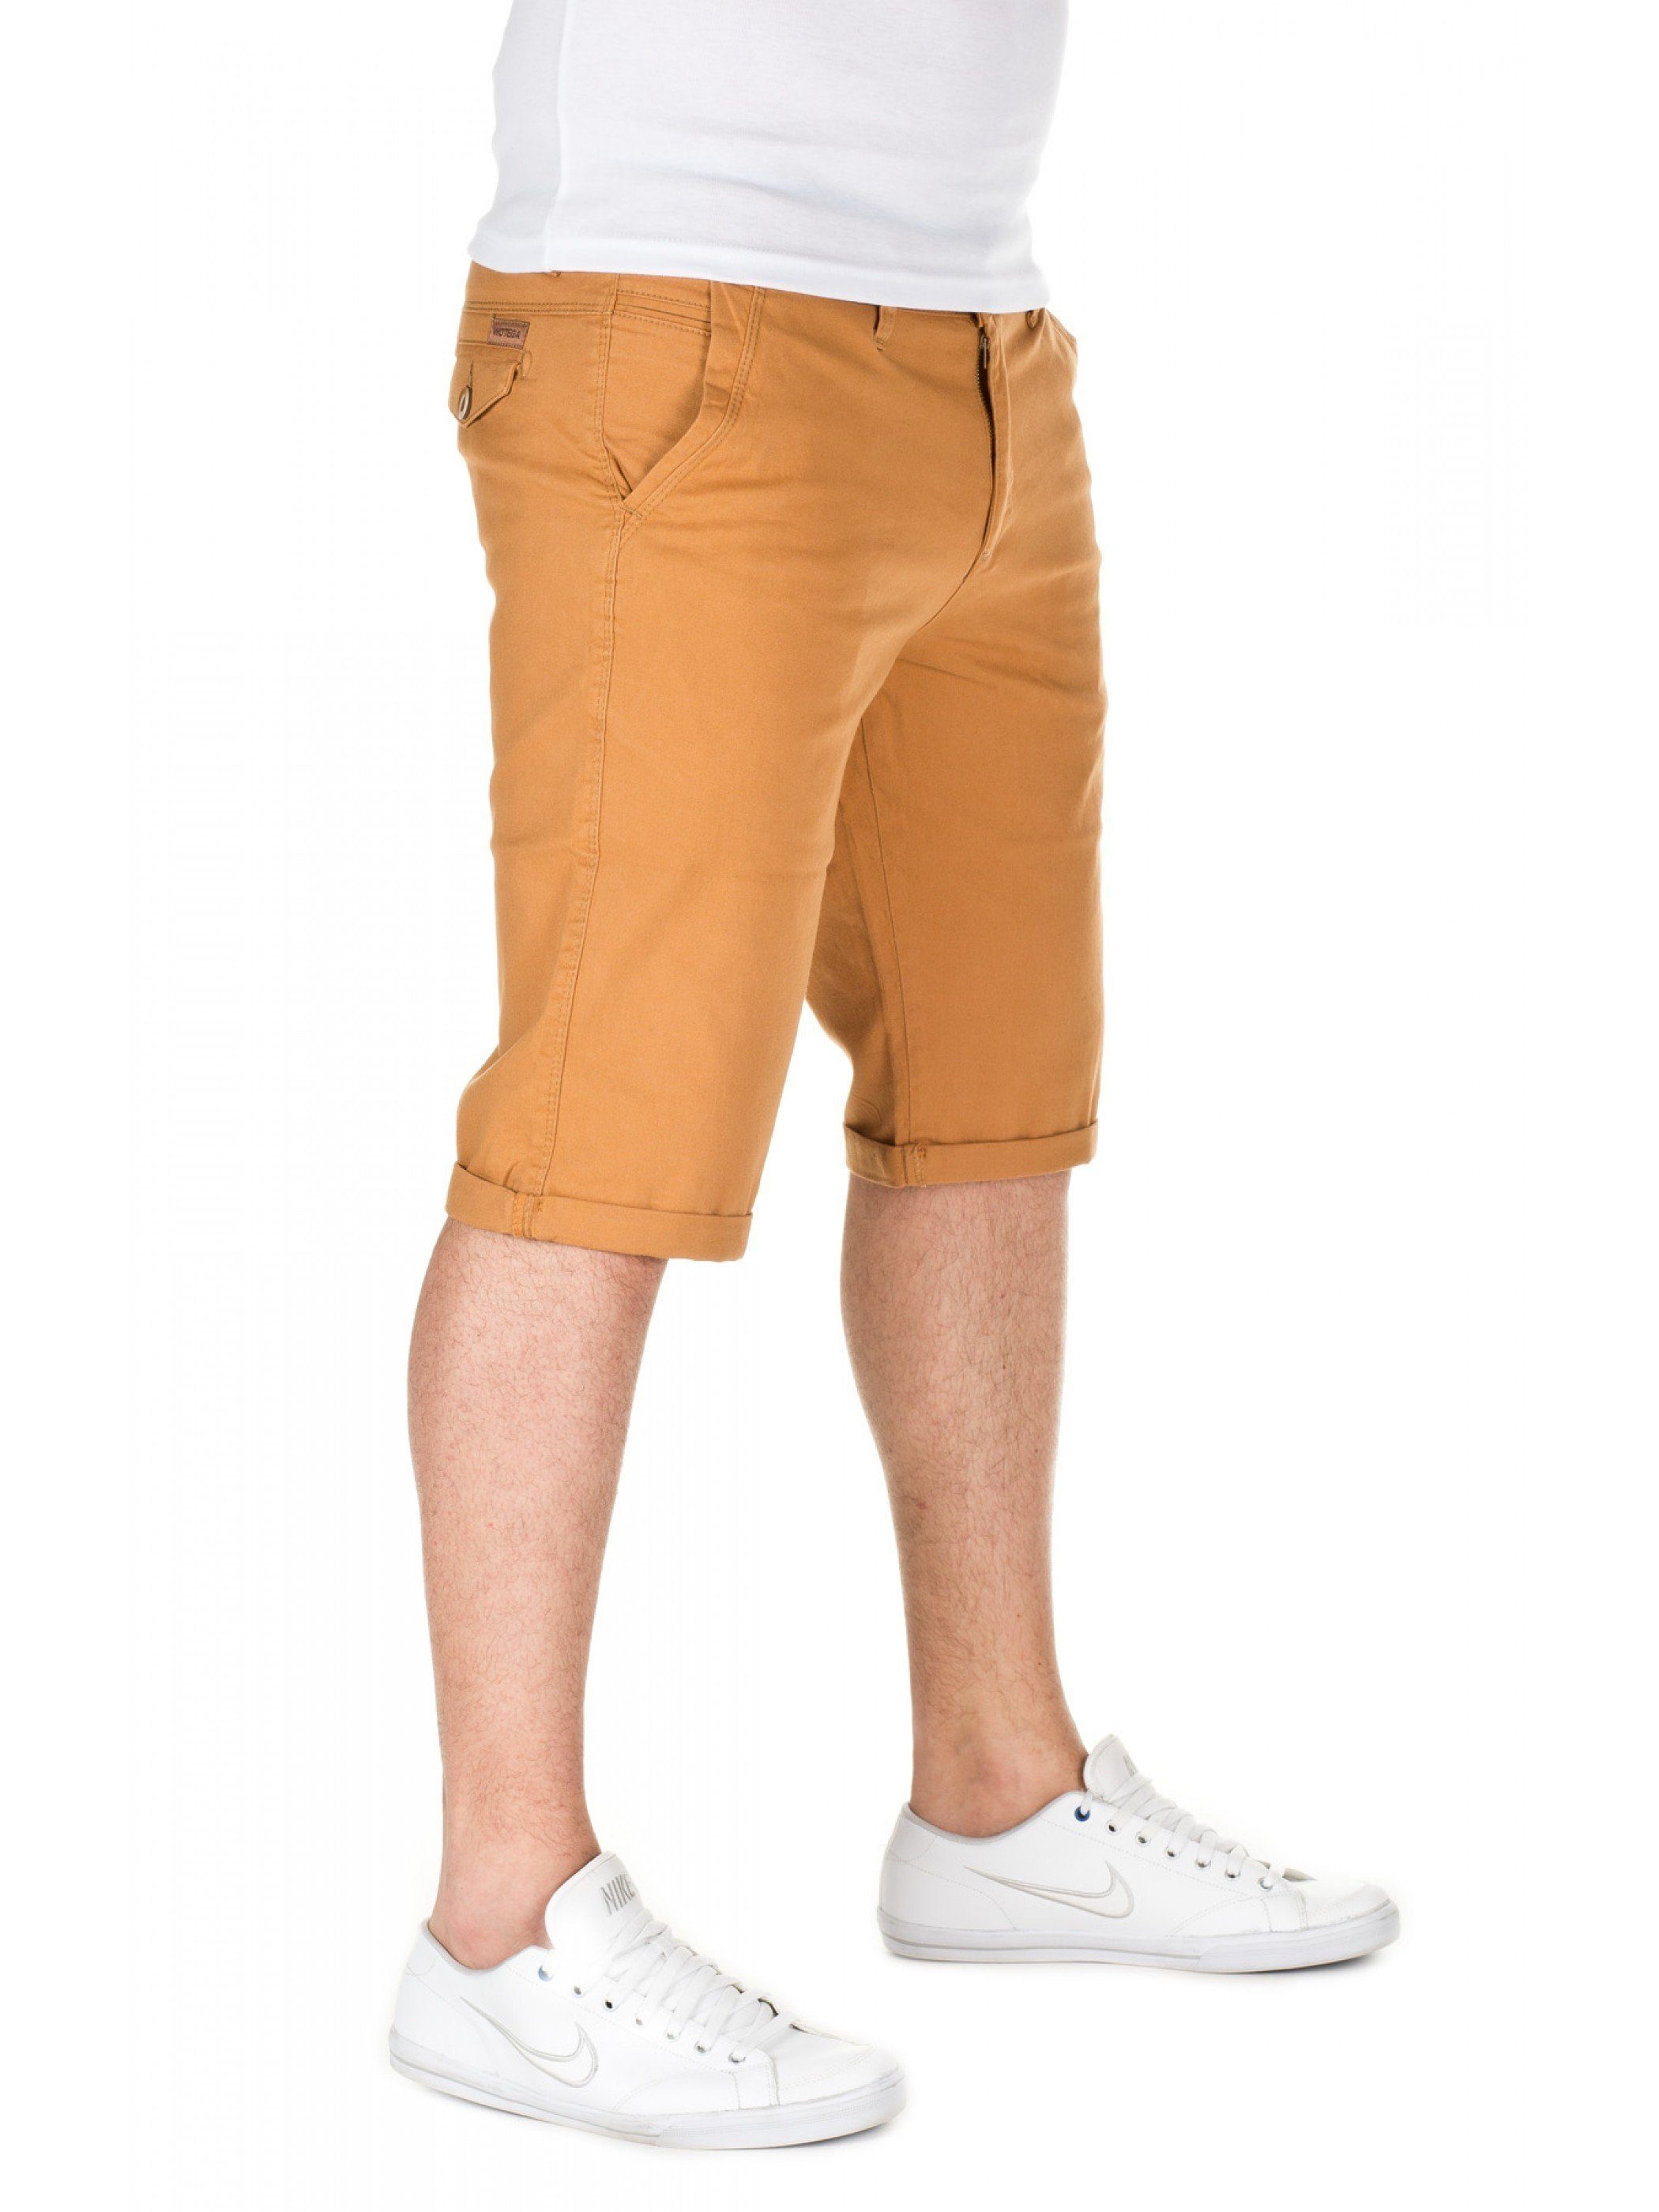 82295) Alex WOTEGA Goldfarben gold shorts - (mustard Shorts WOTEGA Chino Unifarbe in